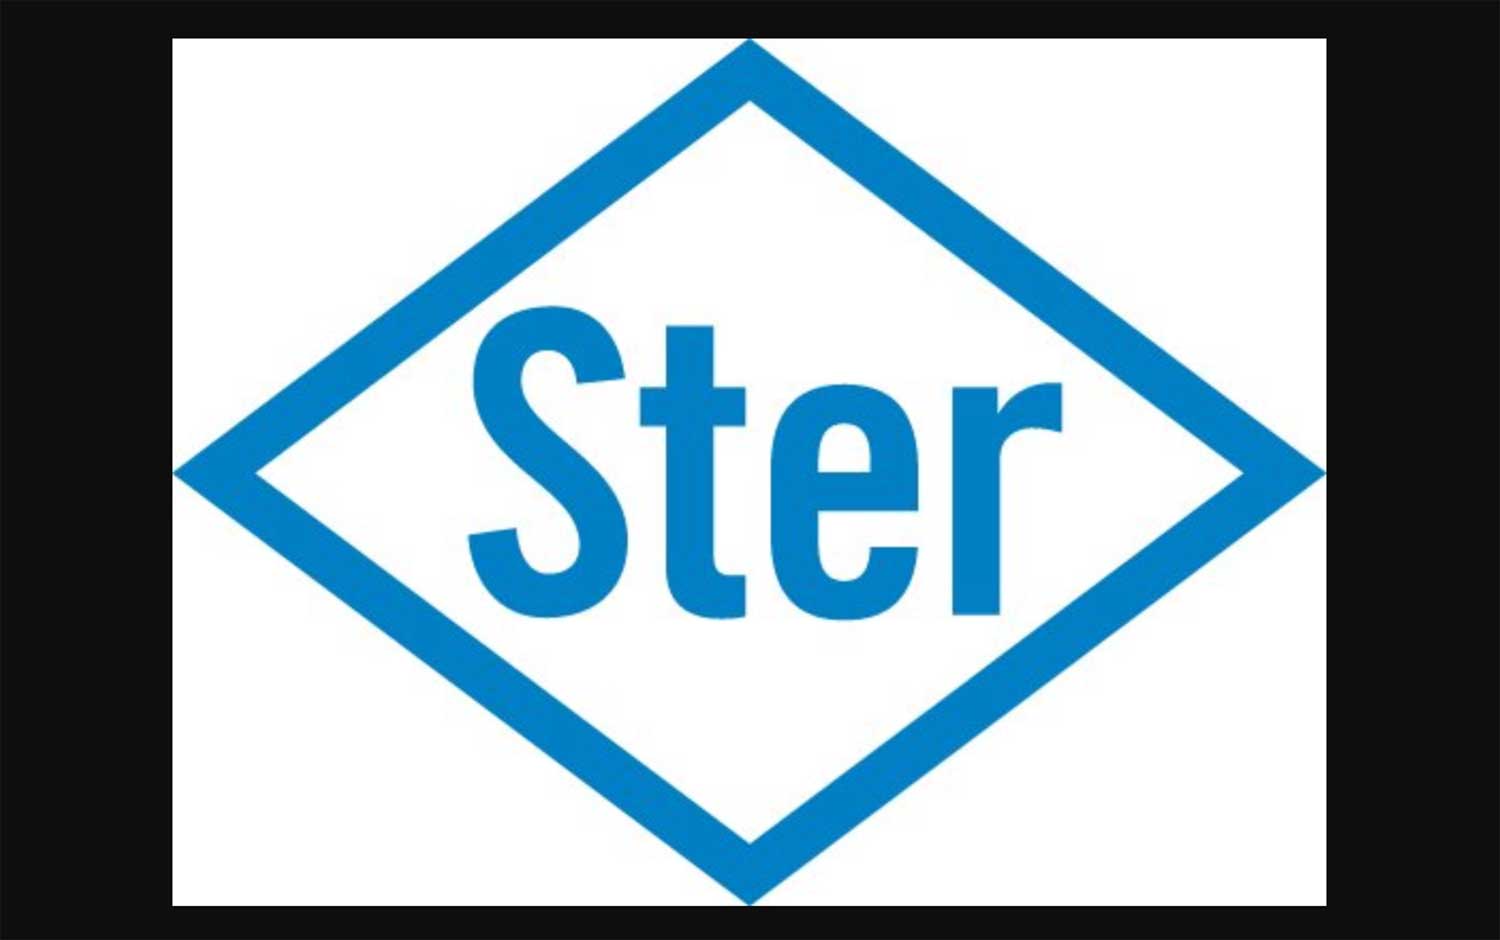 logo-ster